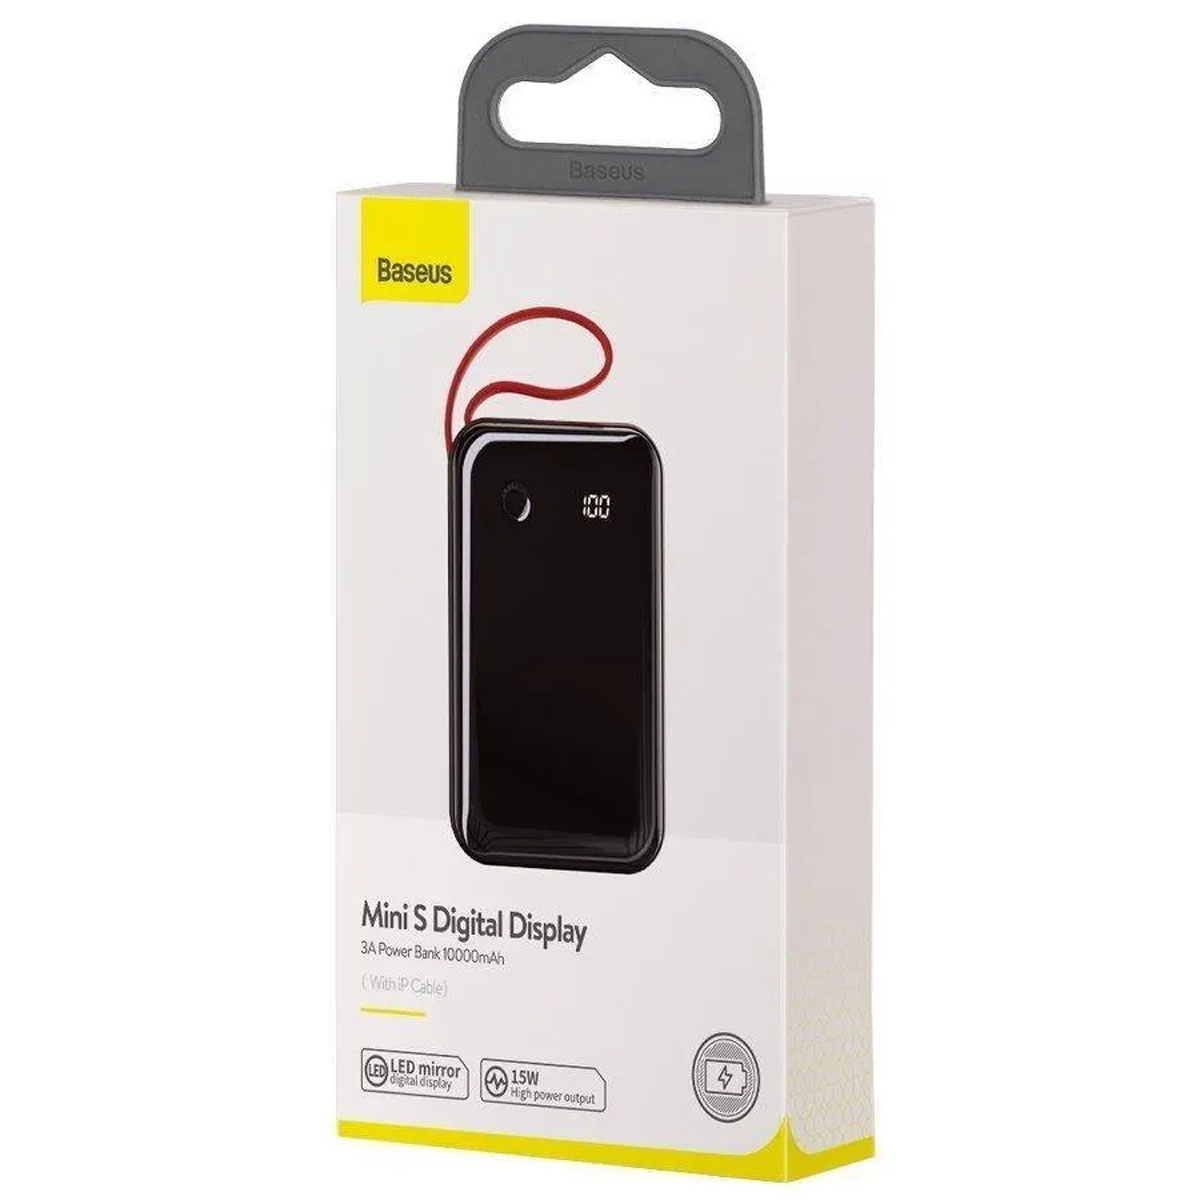 Внешний портативный аккумулятор, Power Bank BASEUS Mini S Digital Display, 10000 mAh, цвет черный